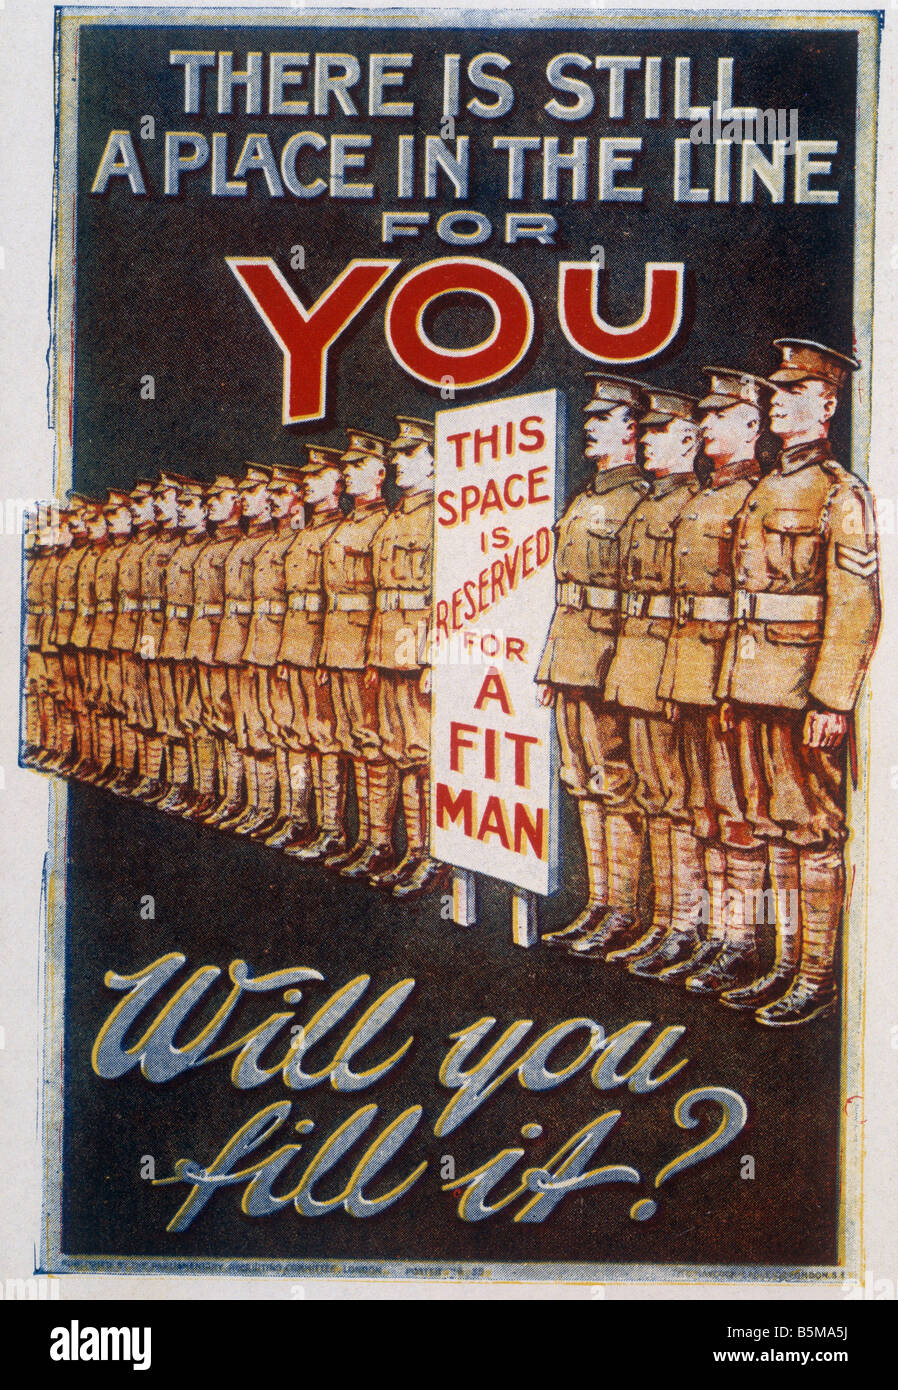 2 G55 P1 1917 69 WWI dort ist immer noch ein Poster Geschichte Weltkrieg Propaganda gibt es noch einen Platz in der Linie für SIE Wil Stockfoto